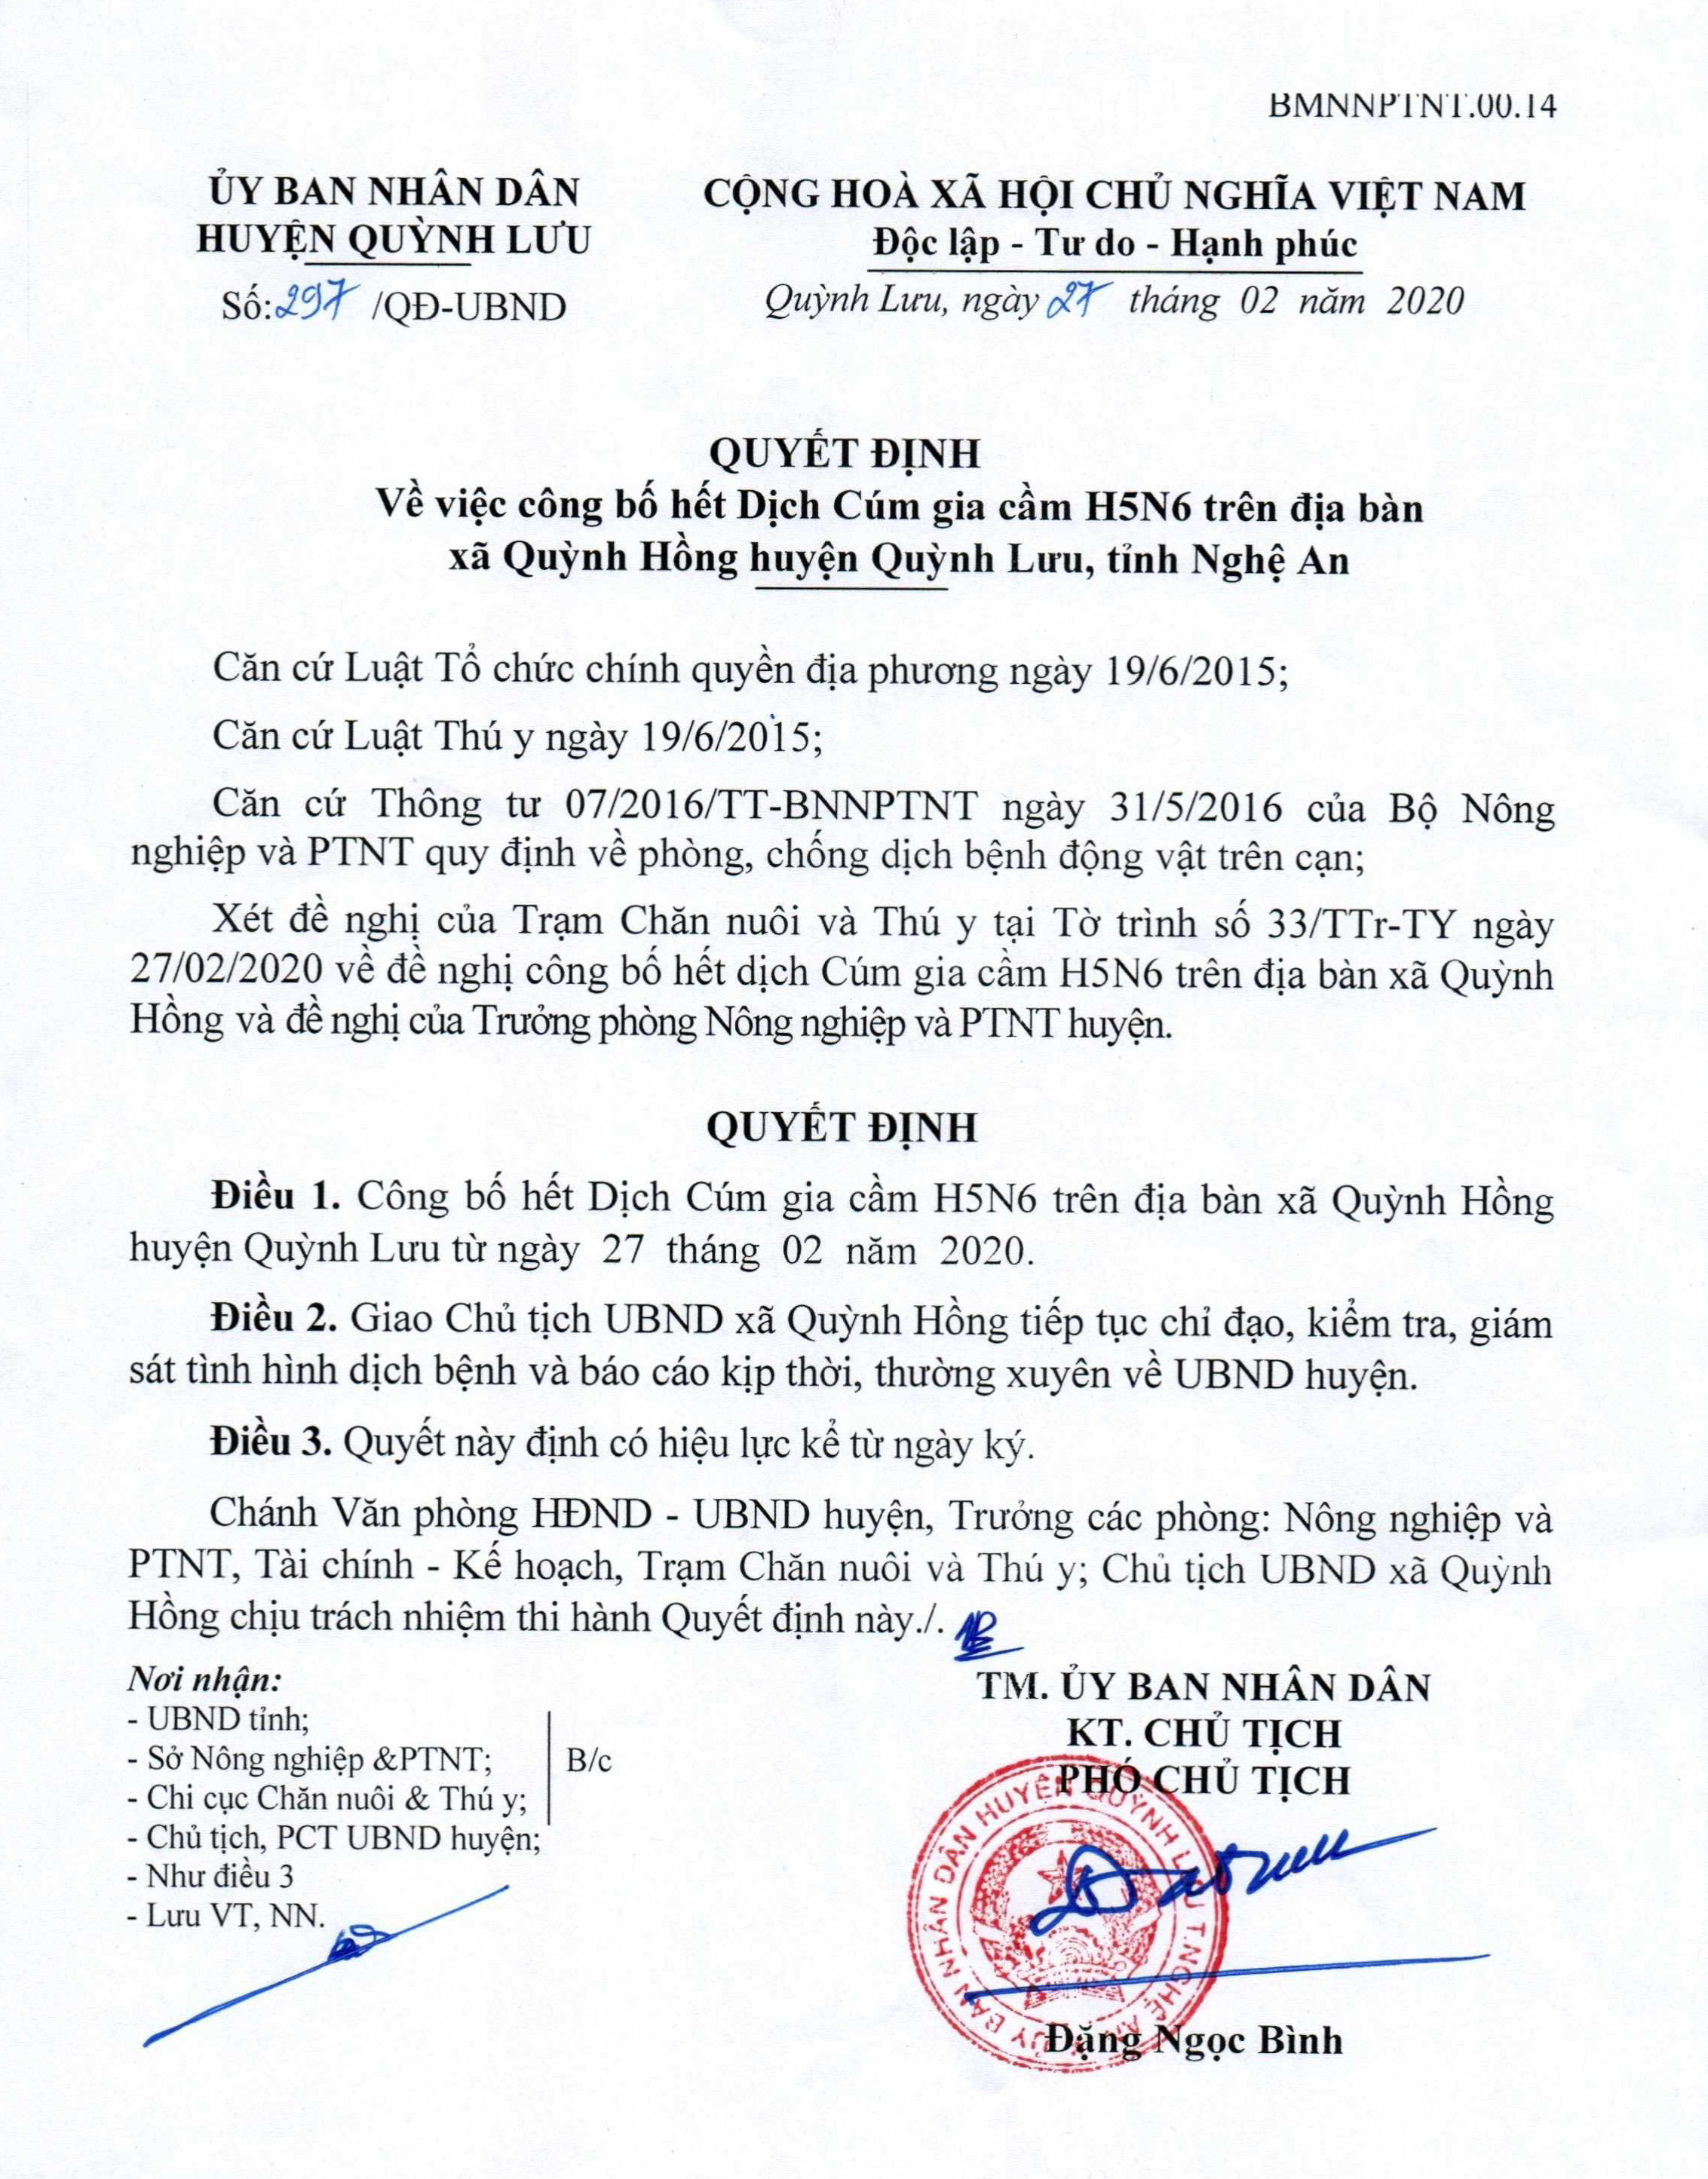 Quyết định công bố hết dịch cúm gia cầm A/H5N6 trên địa bàn xã Quỳnh Hồng của UBND huyện Quỳnh Lưu.